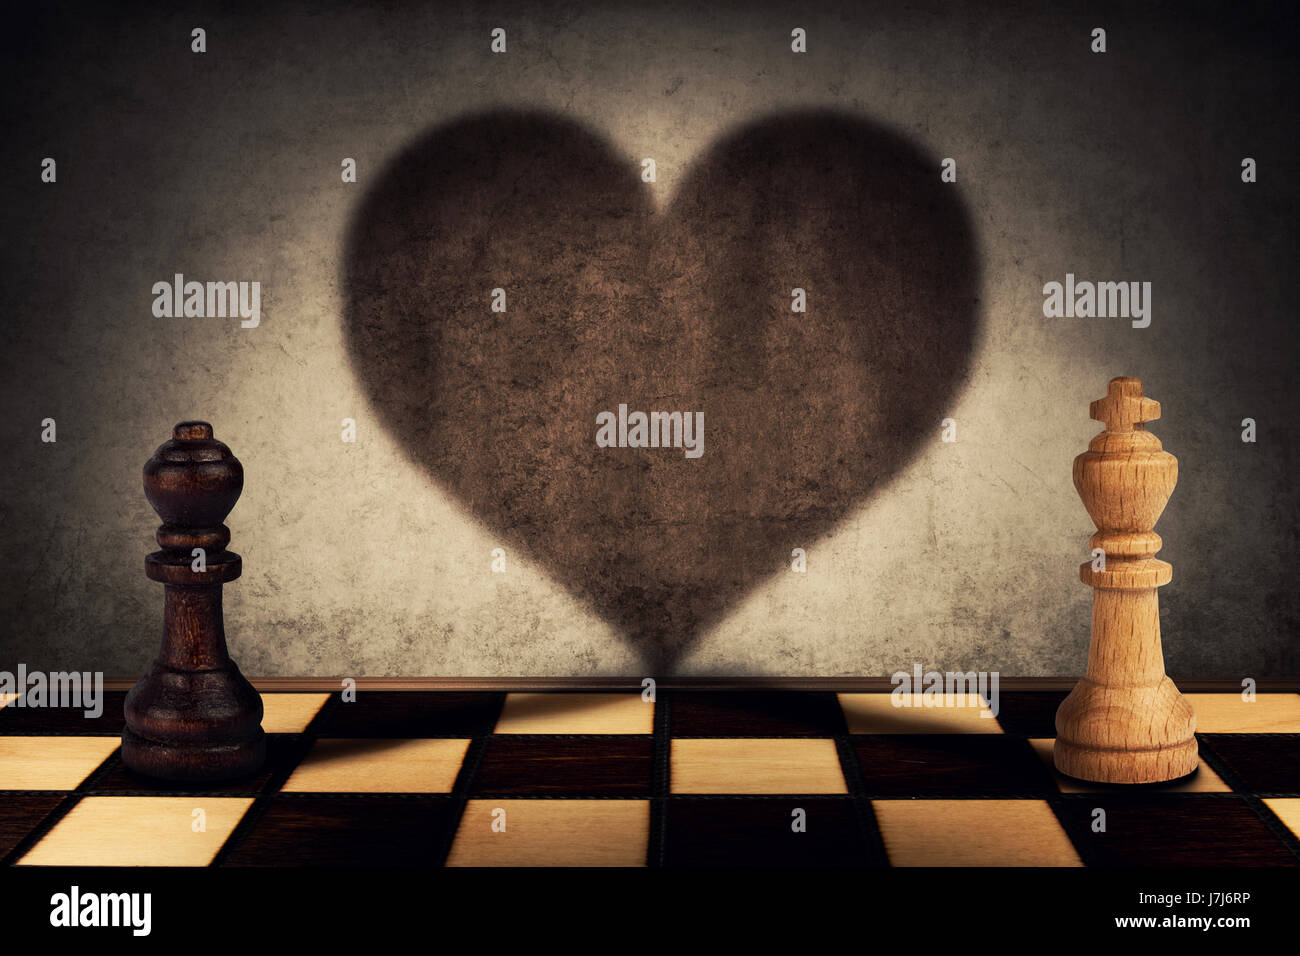 Regina nera e re bianco pezzi di scacchi in piedi di fronte un altro colata le loro ombre si trasformano in un grande cuore sulla parete. Simbolo di amore Foto Stock